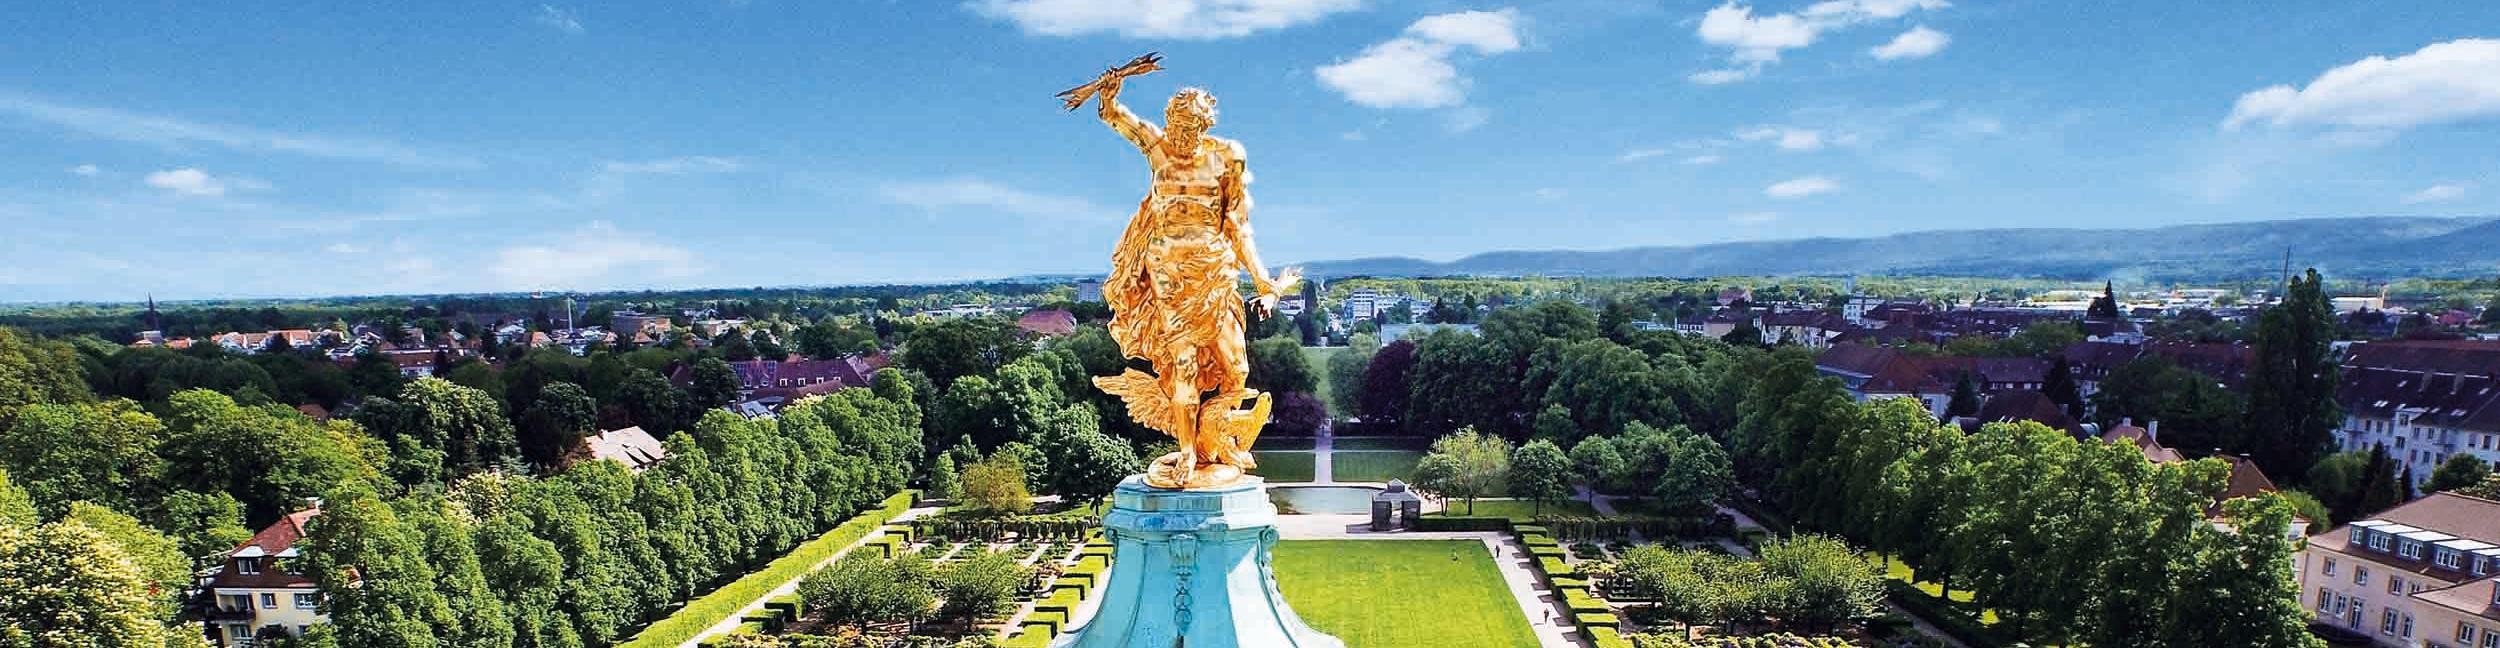 Golden Man Rastatt Castle